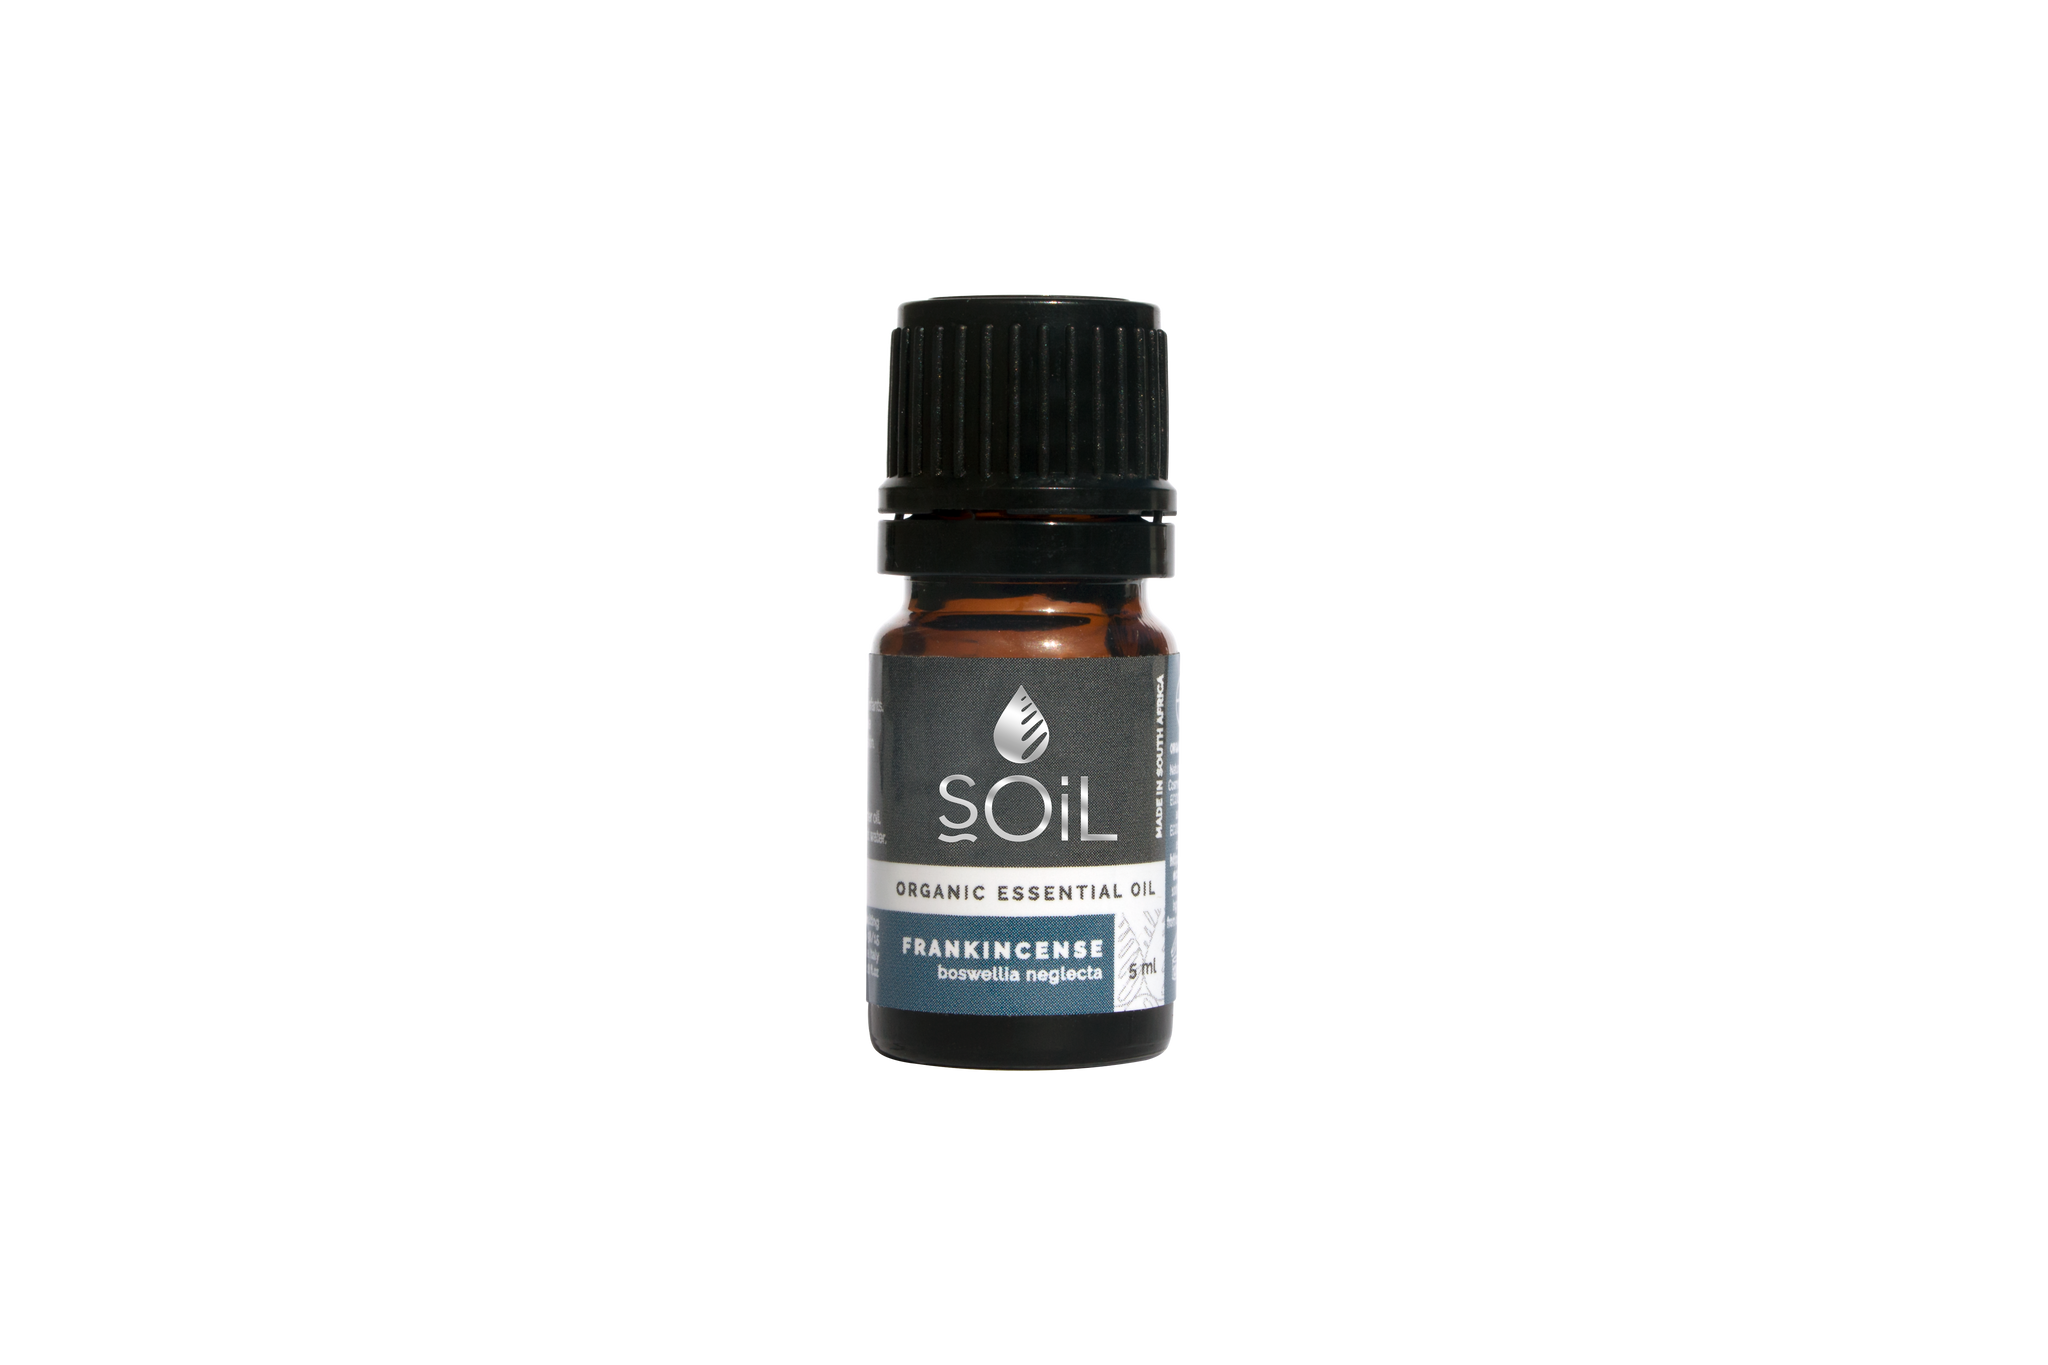 SOil Organic Essential Oil - Frankincense Oil (Boswellia Neglecta) 5ml